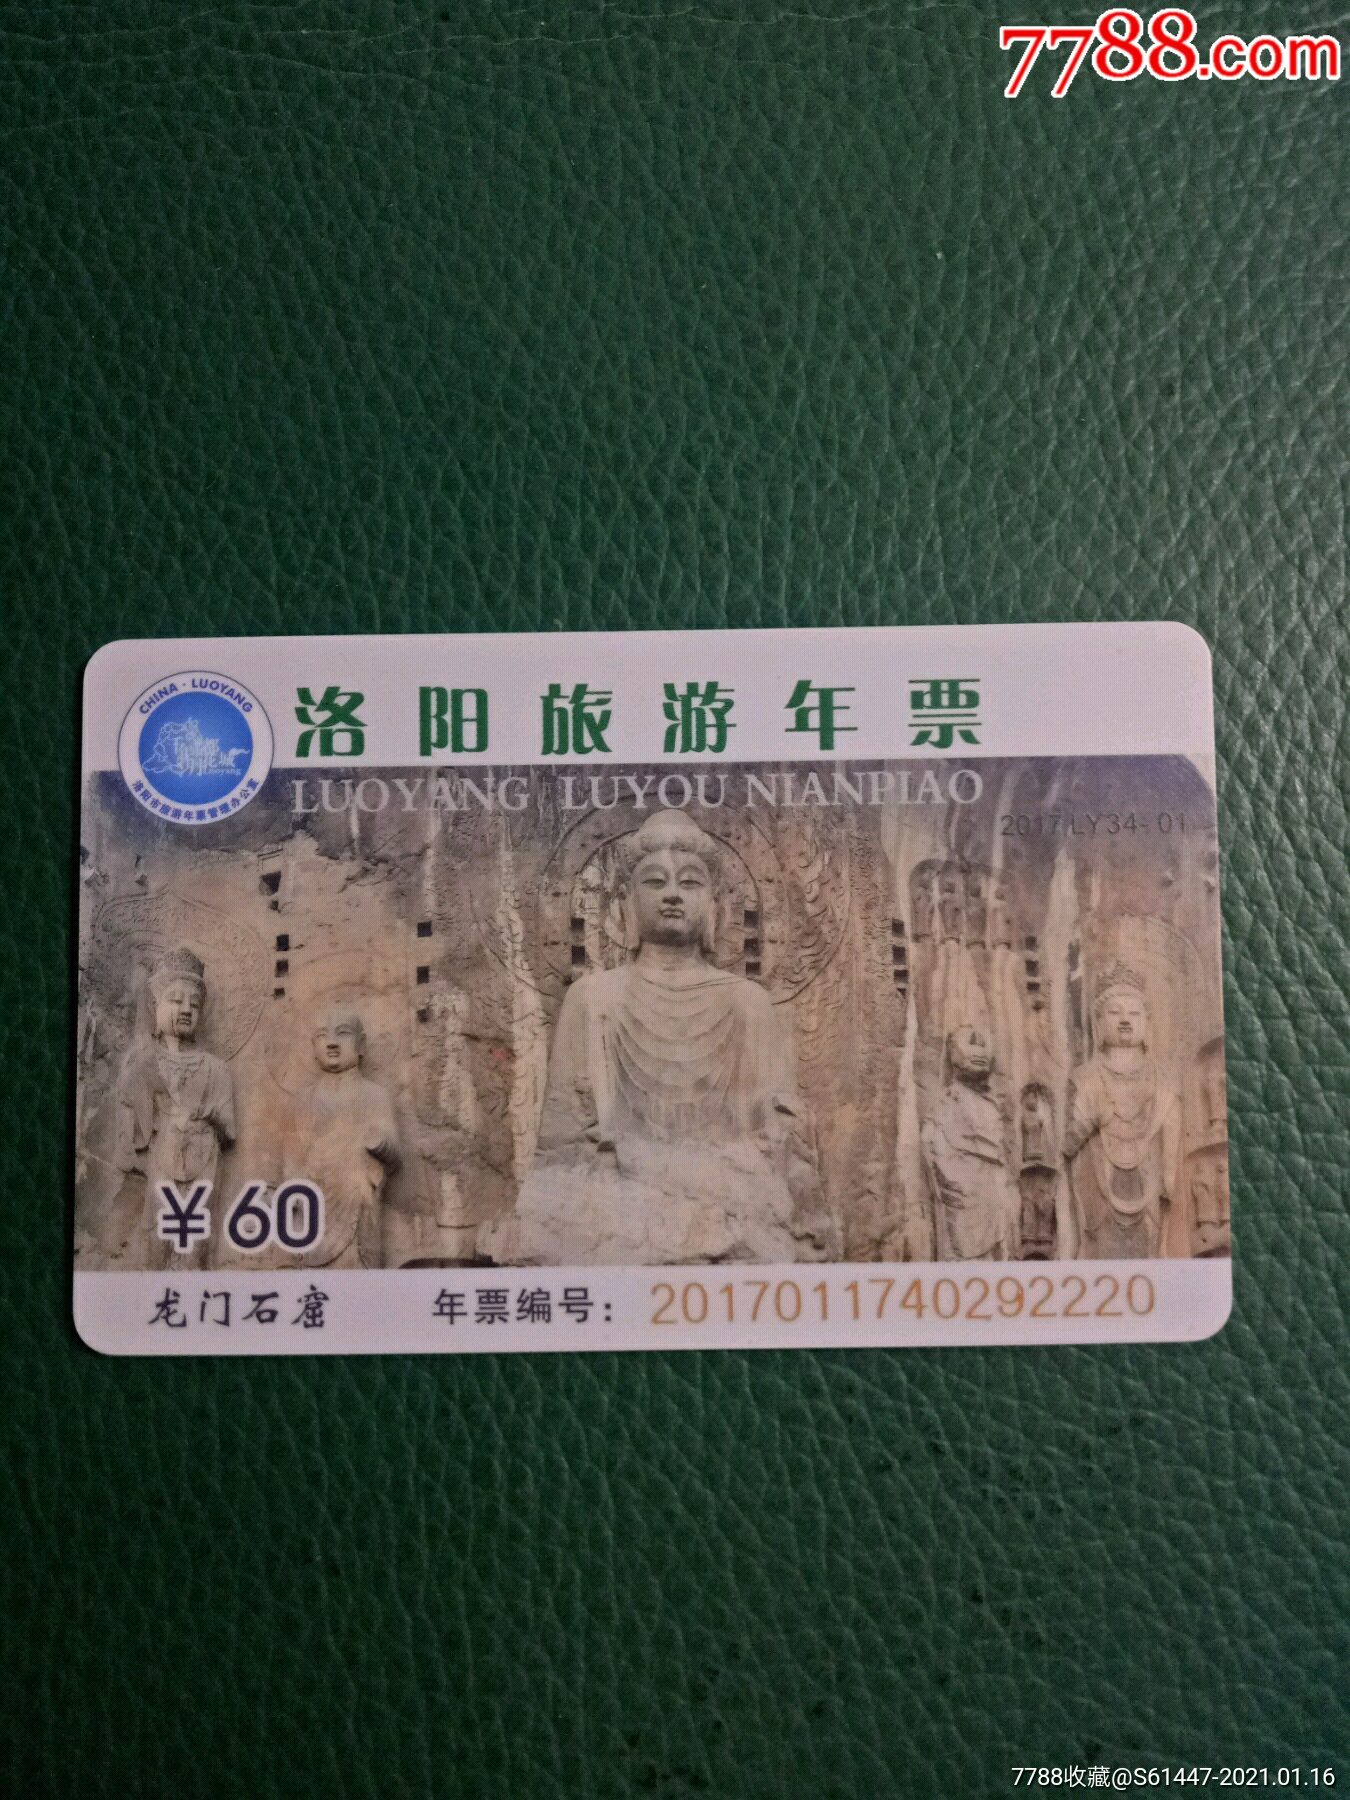 河南旅游年票包含景点图片